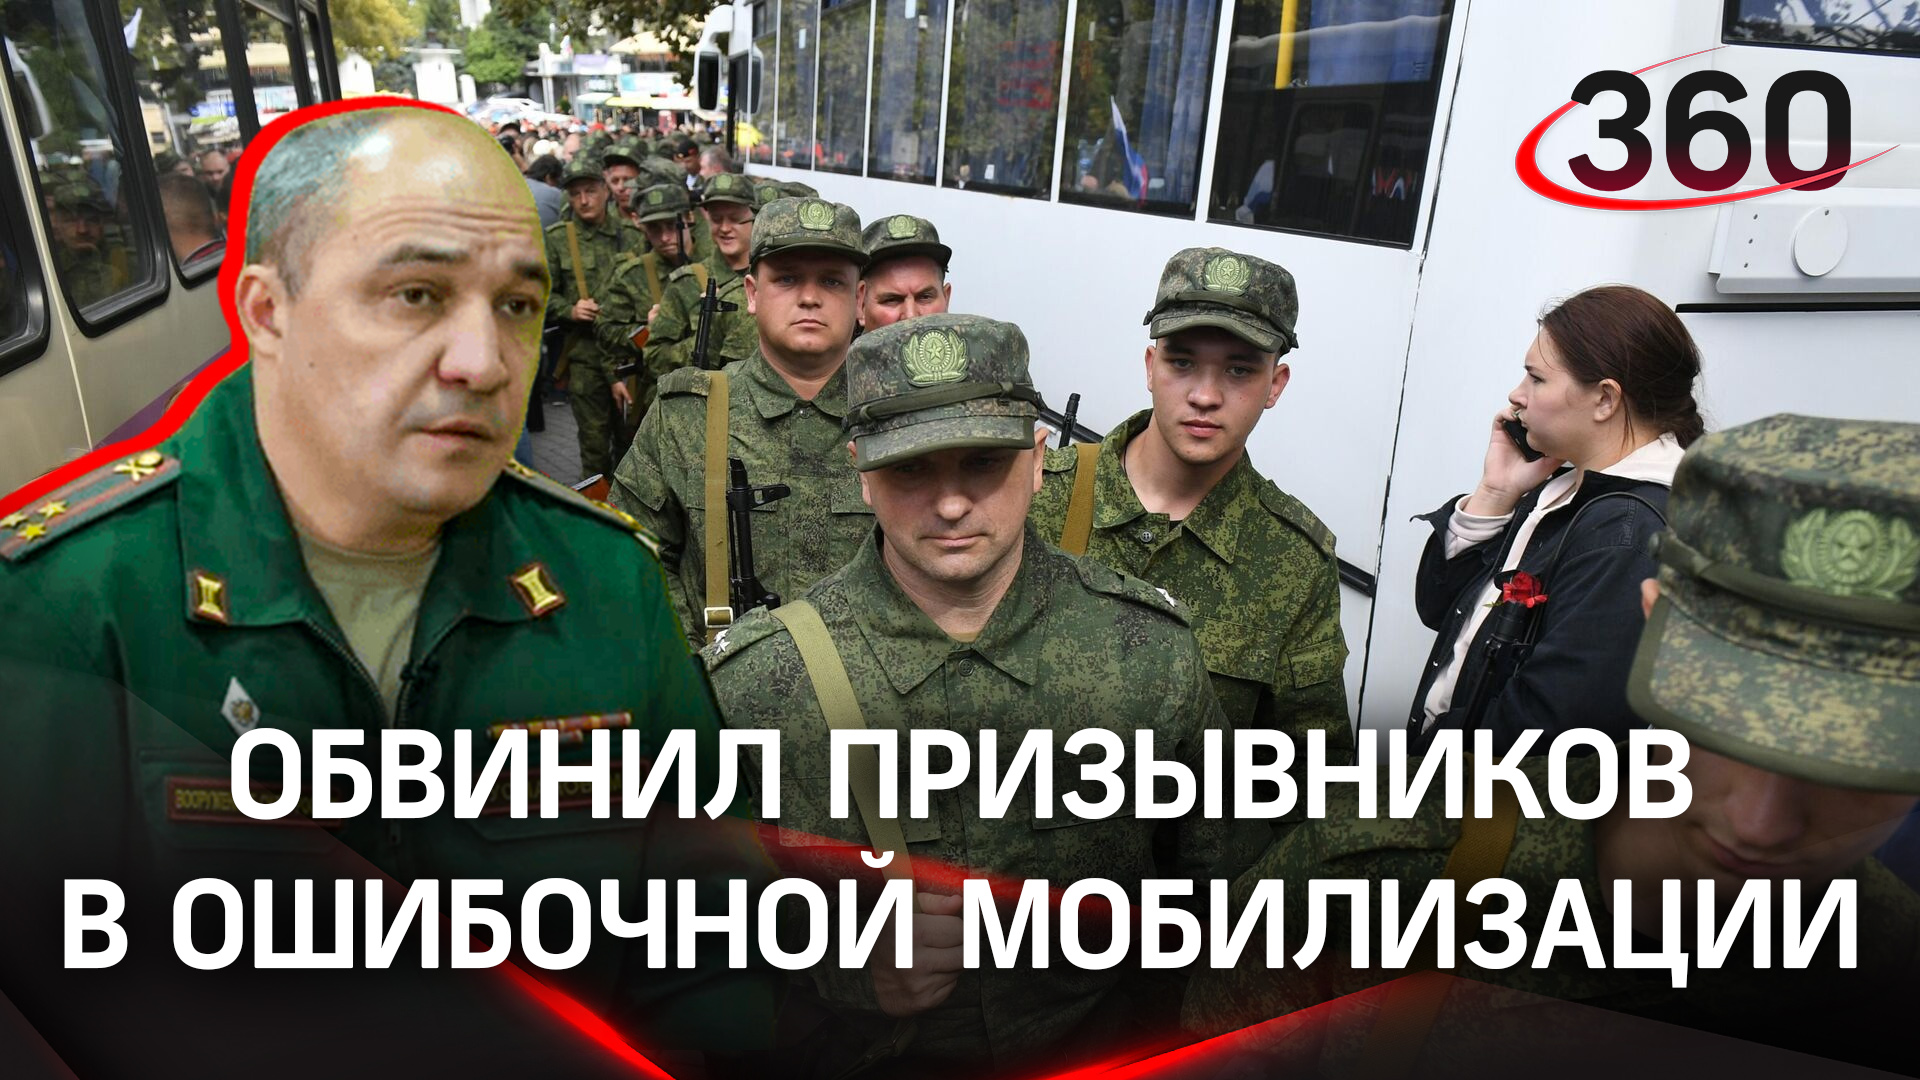 Военком Алтая обвинил в ошибочной мобилизации самих призывников